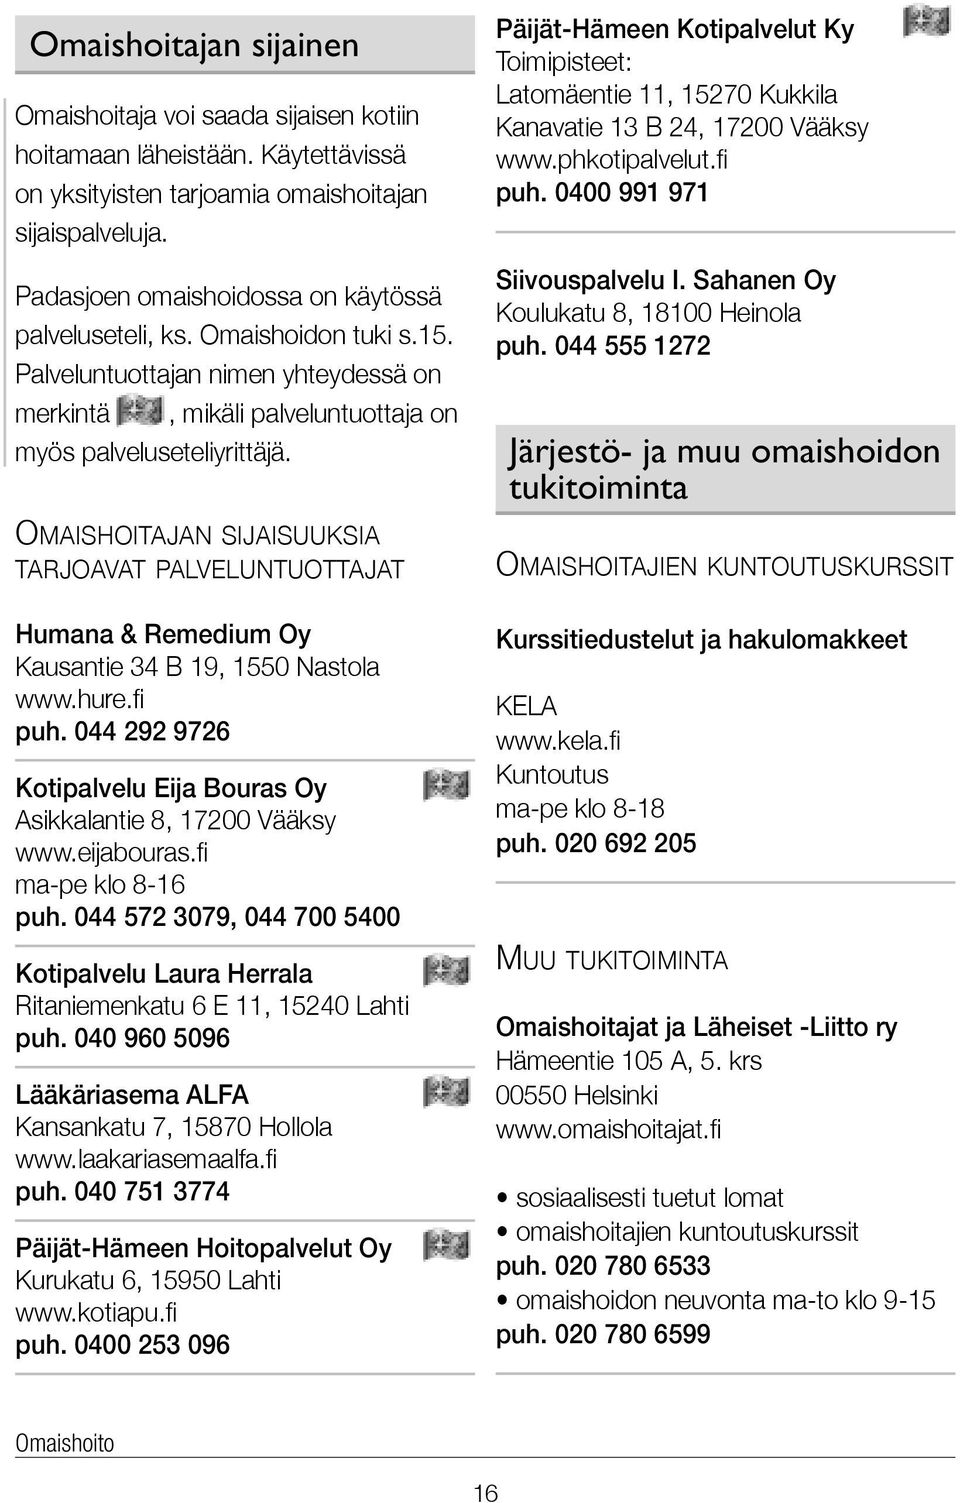 Omaishoitajan sijaisuuksia tarjoavat palveluntuottajat Humana & Remedium Oy Kausantie 34 B 19, 1550 Nastola www.hure.fi puh. 044 292 9726 Kotipalvelu Eija Bouras Oy Asikkalantie 8, 17200 Vääksy www.